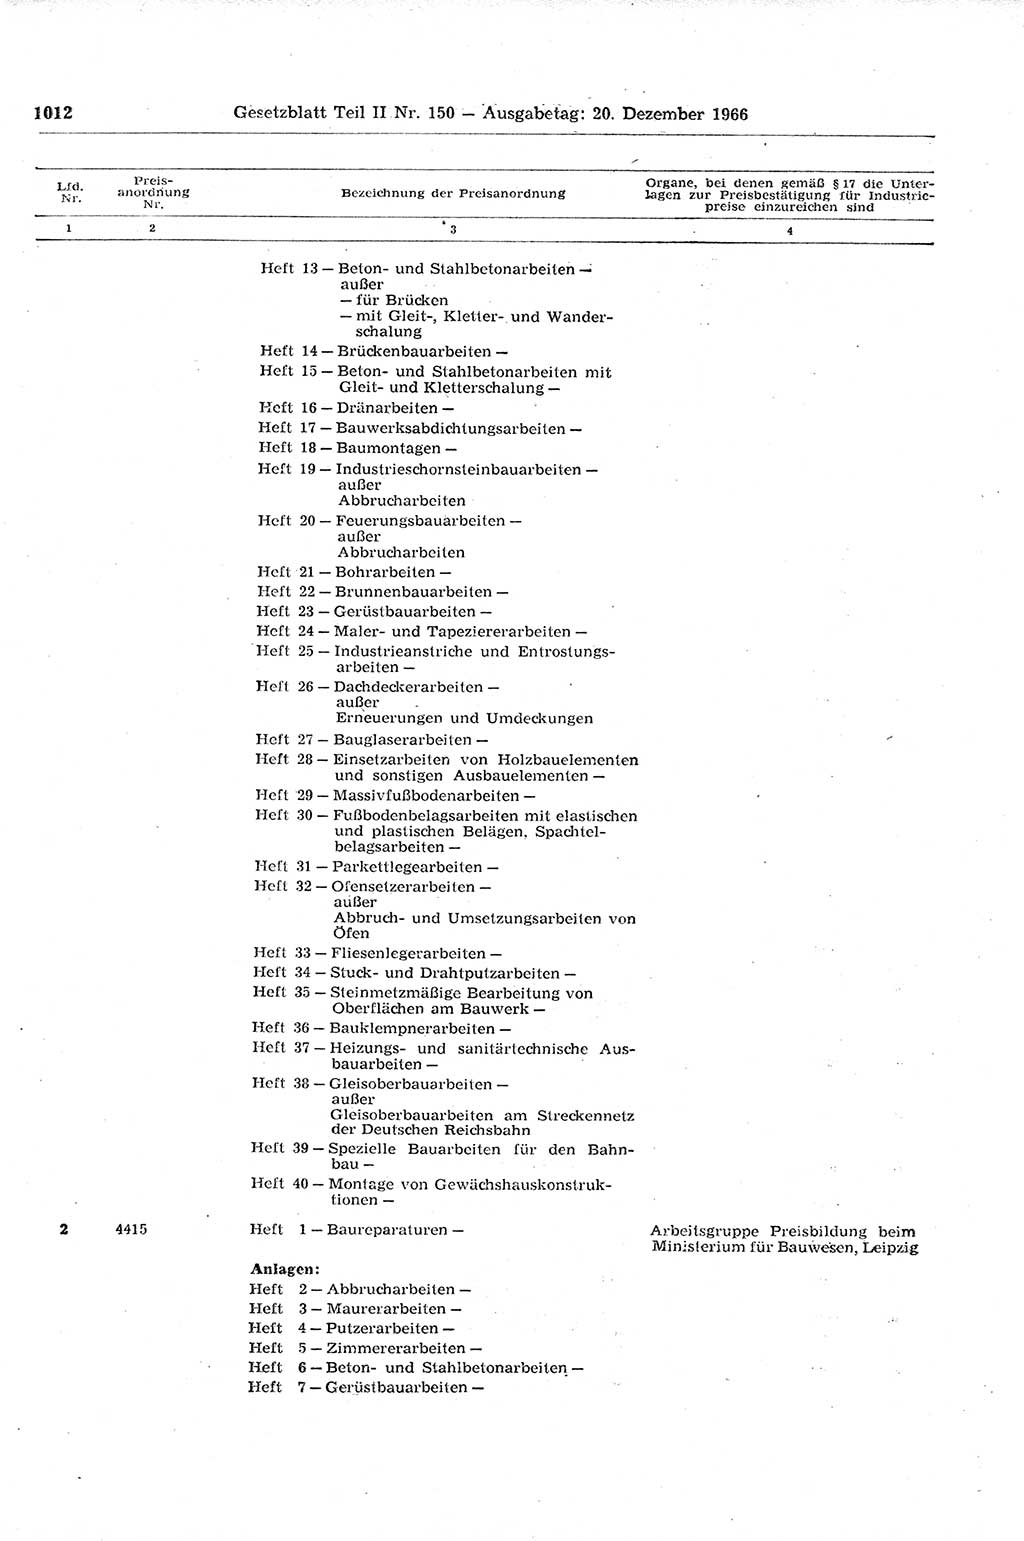 Gesetzblatt (GBl.) der Deutschen Demokratischen Republik (DDR) Teil ⅠⅠ 1966, Seite 1012 (GBl. DDR ⅠⅠ 1966, S. 1012)